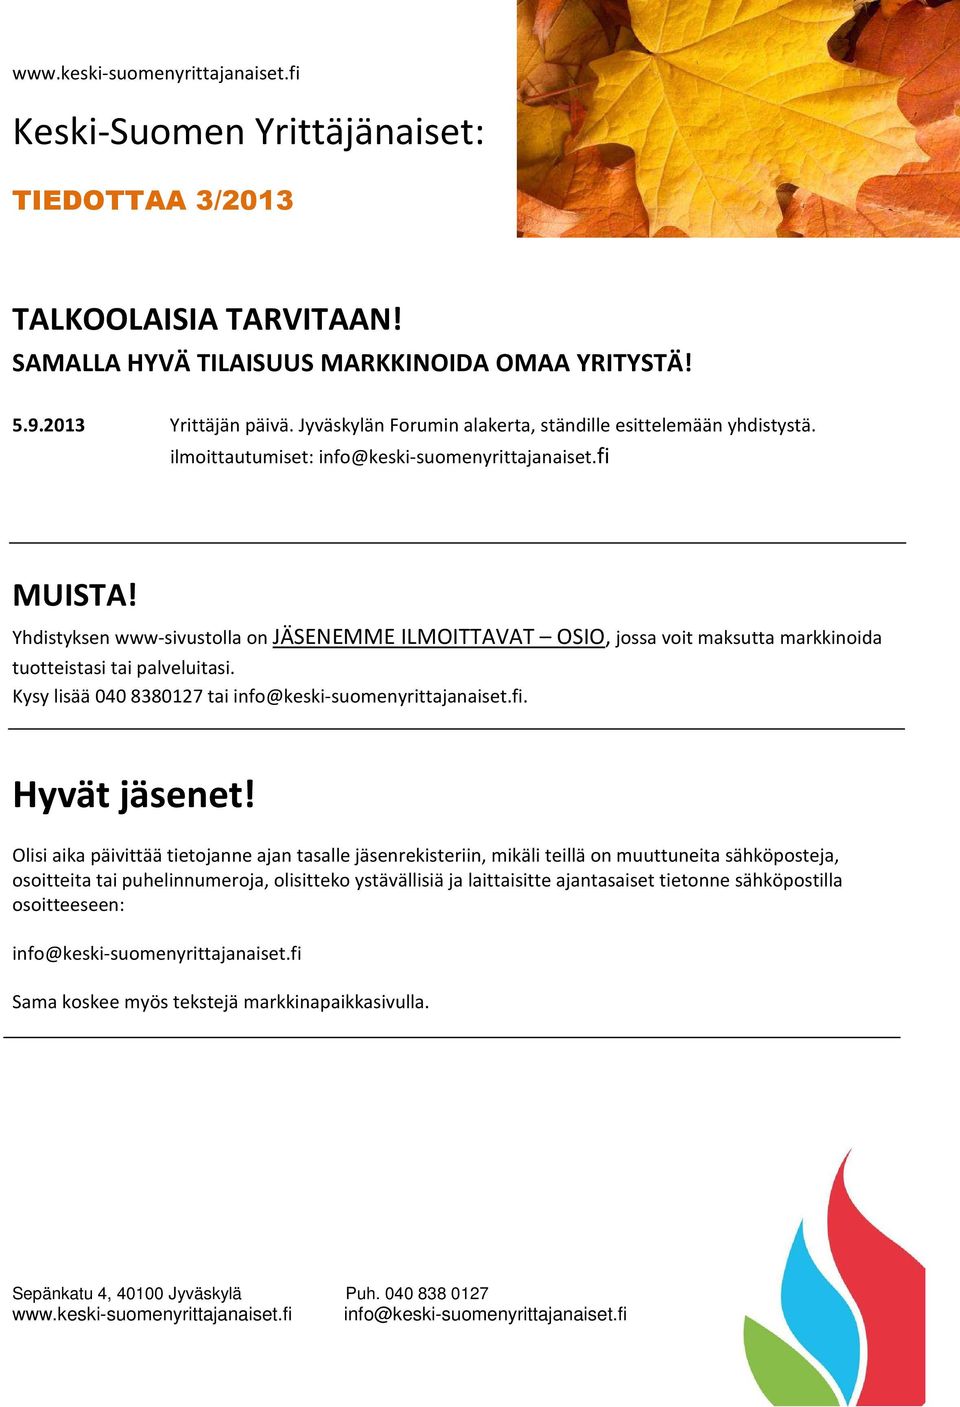 Kysy lisää 040 8380127 tai info@keski-suomenyrittajanaiset.fi. Hyvät jäsenet!